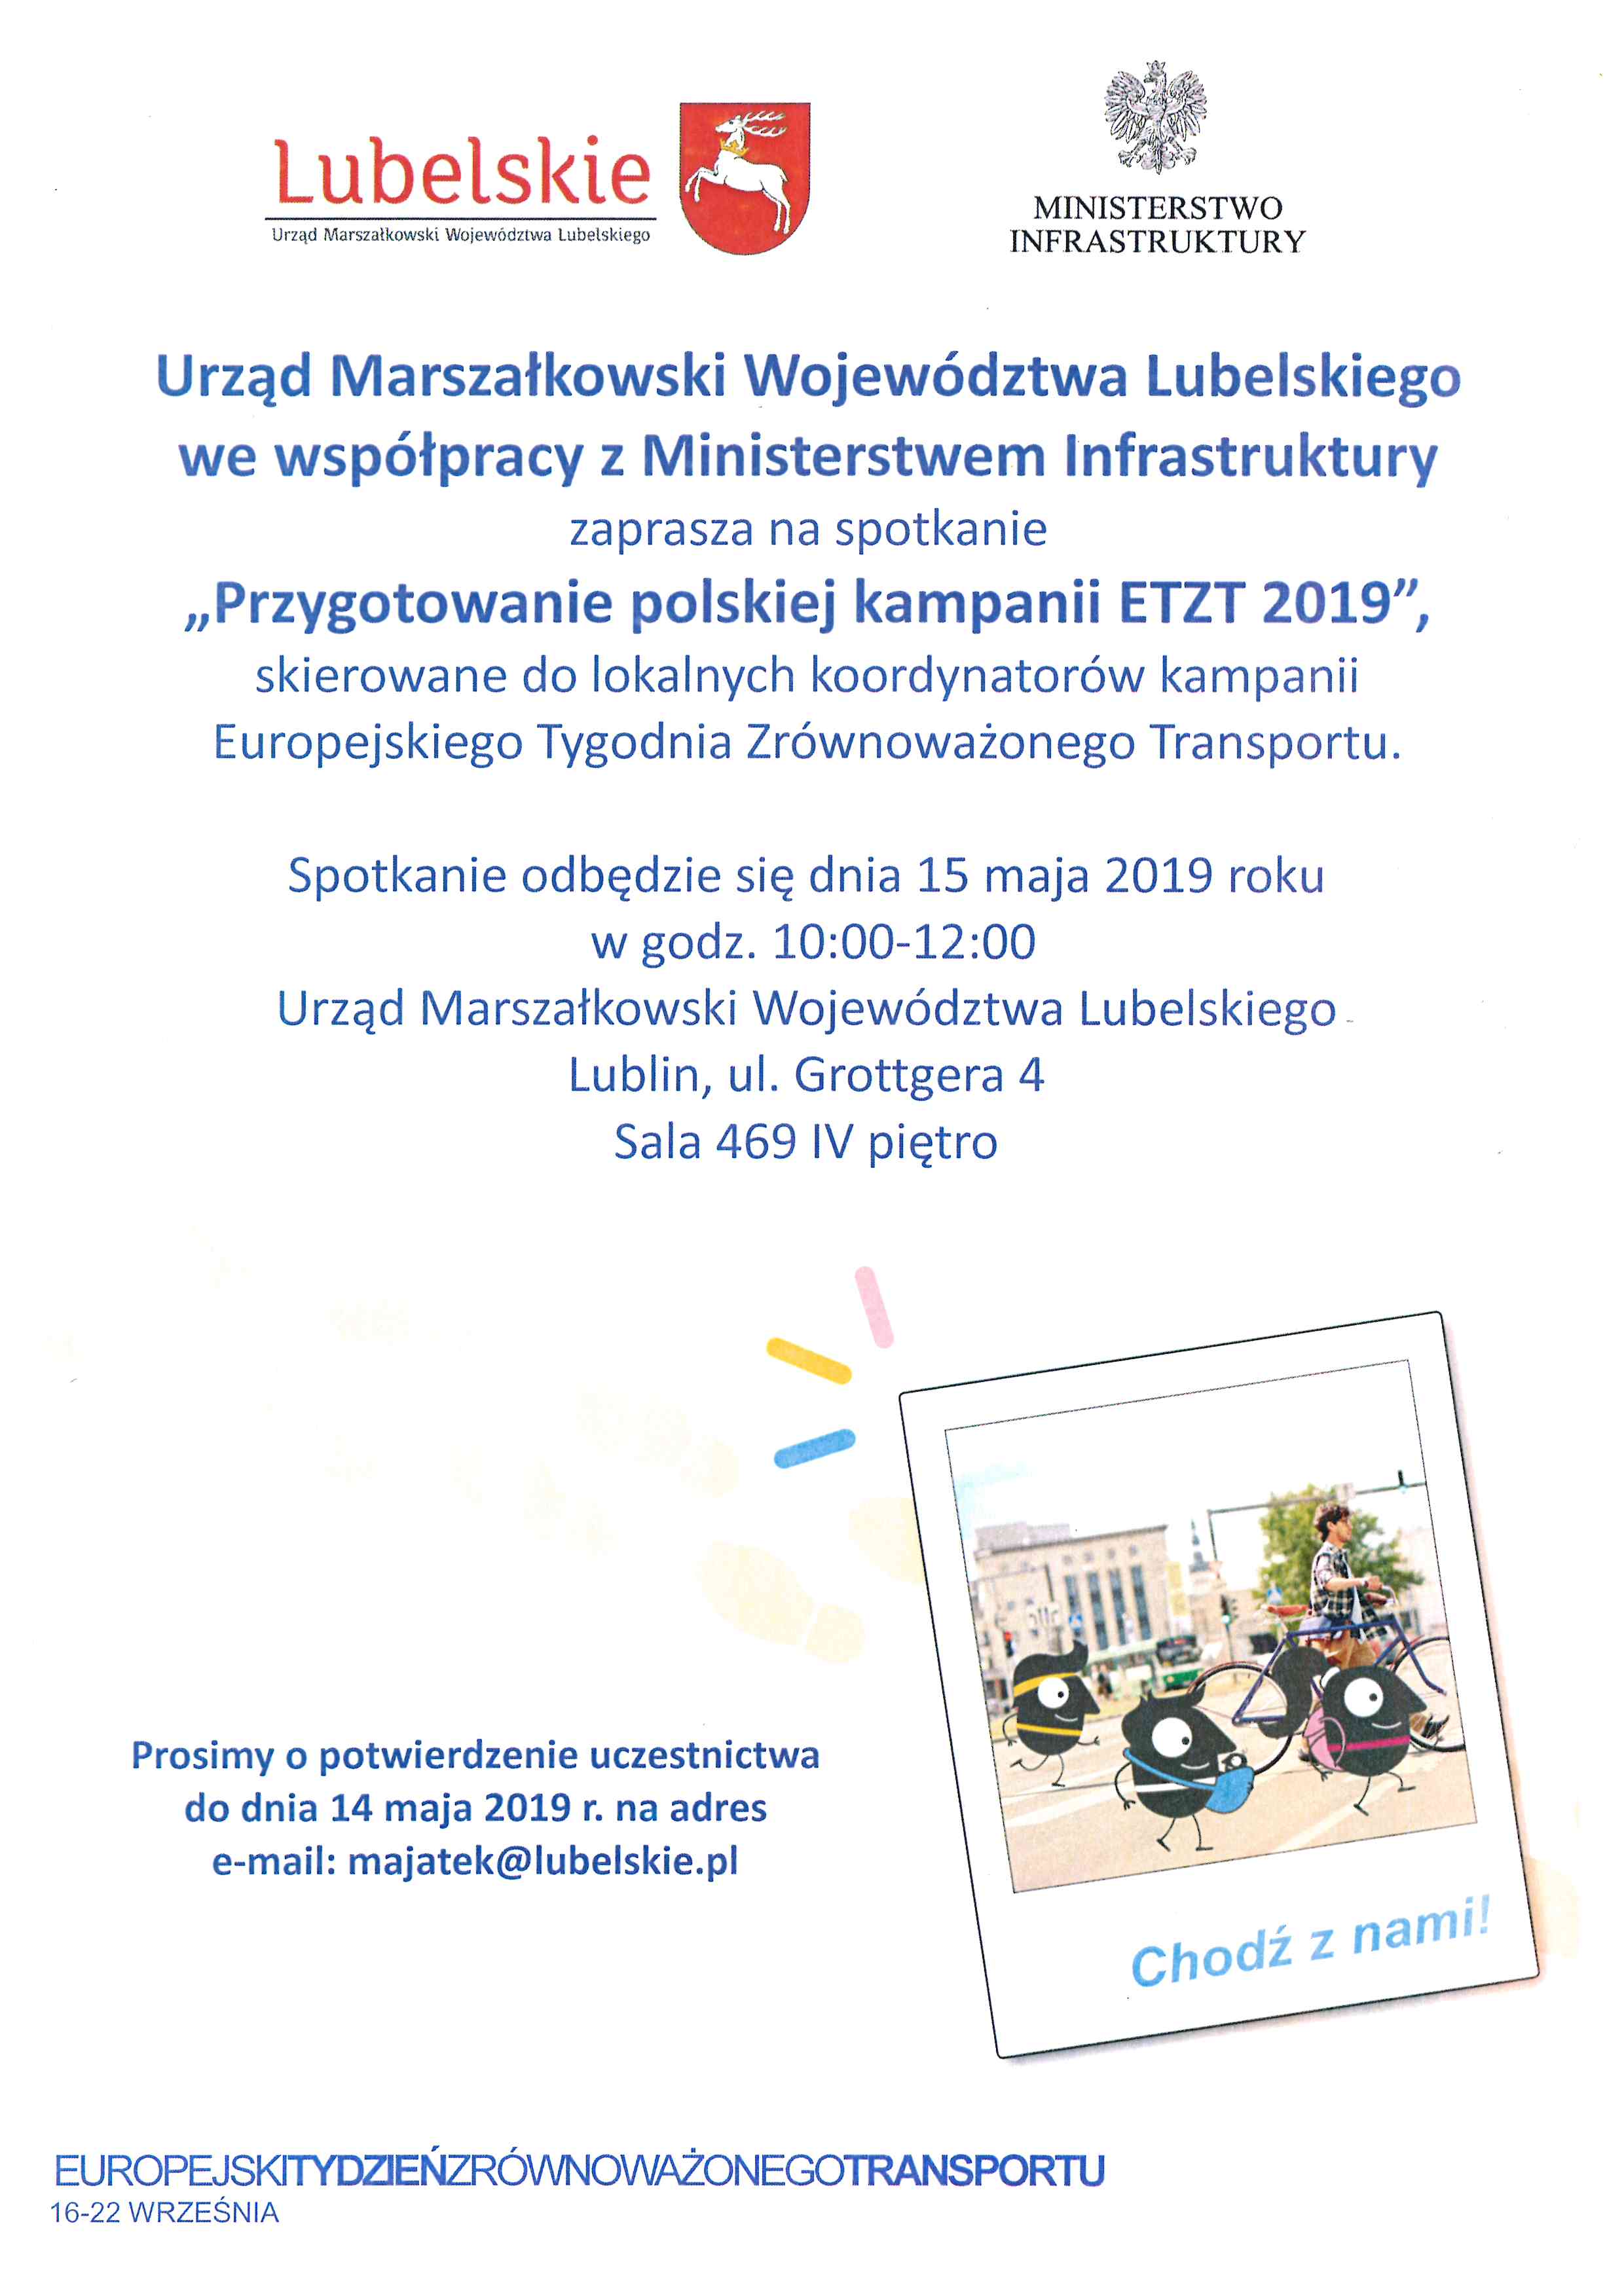 Przygotowanie polskiej kampanii ETZT 2019 – zaproszenie